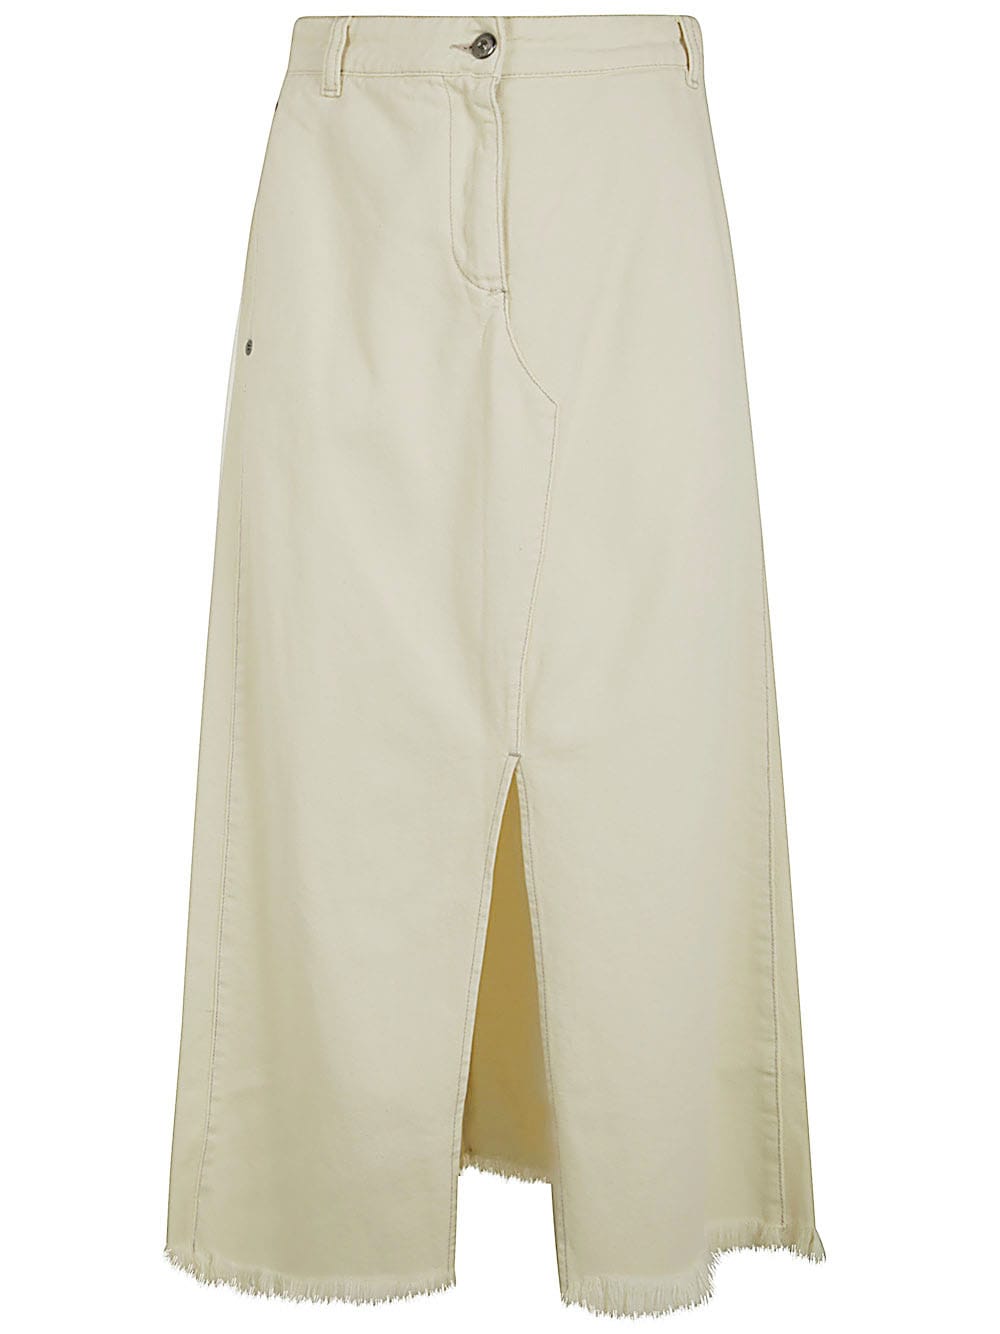 Antonelli Iago Denim Skirt With Slit In Cream